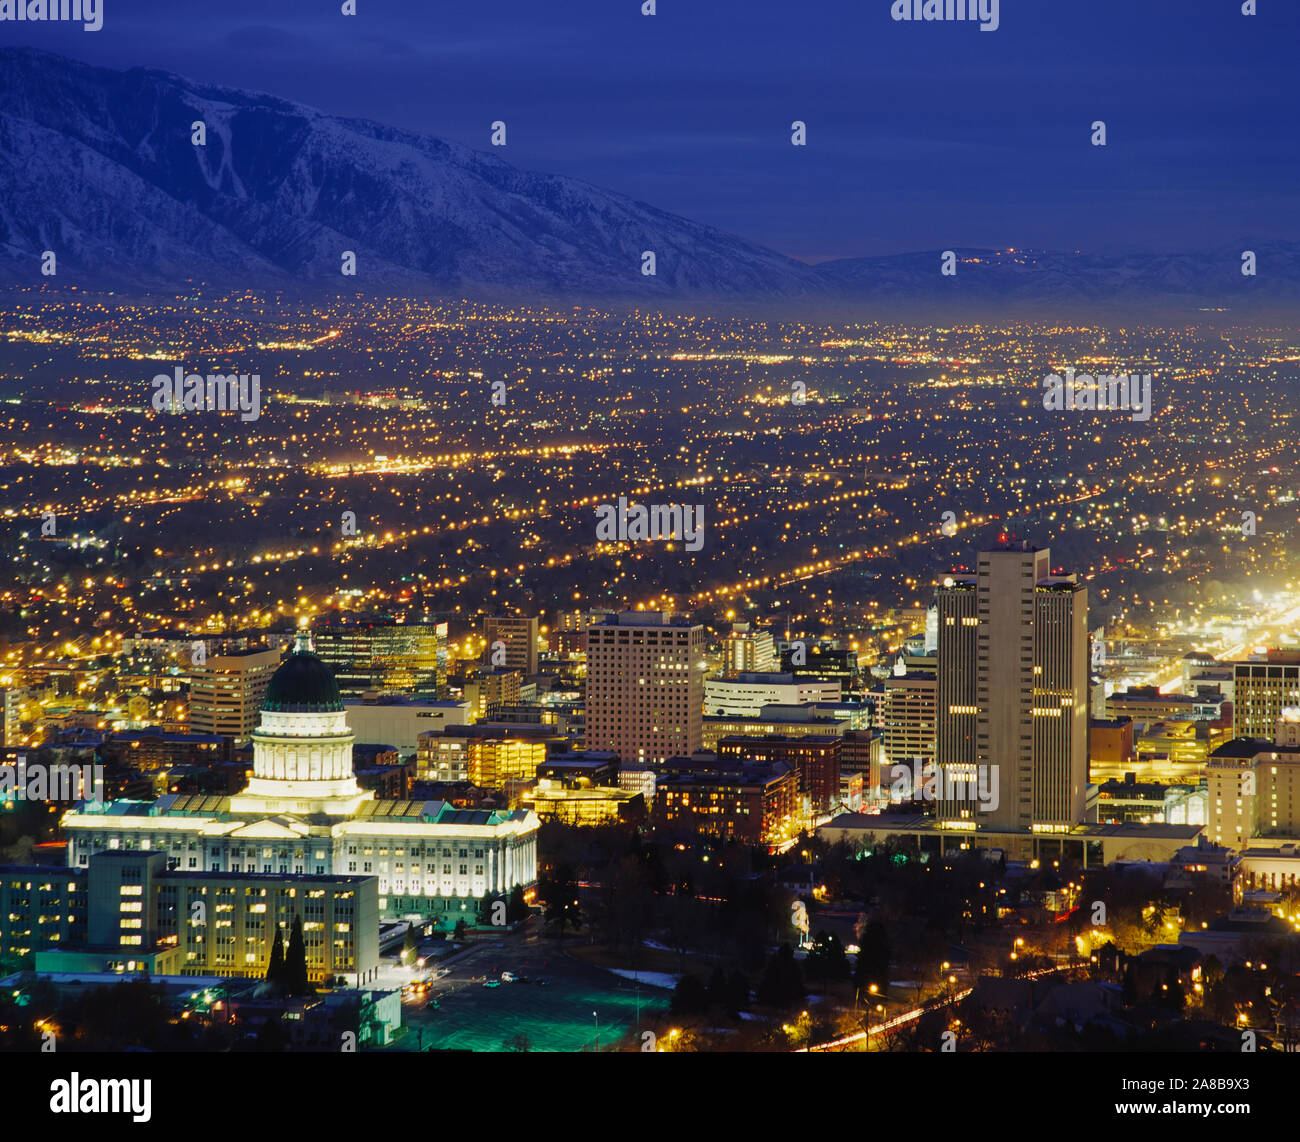 Elevato angolo di visione degli edifici è illuminato di notte in una città, lo State Capitol Building, Salt Lake City, Utah, Stati Uniti d'America Foto Stock